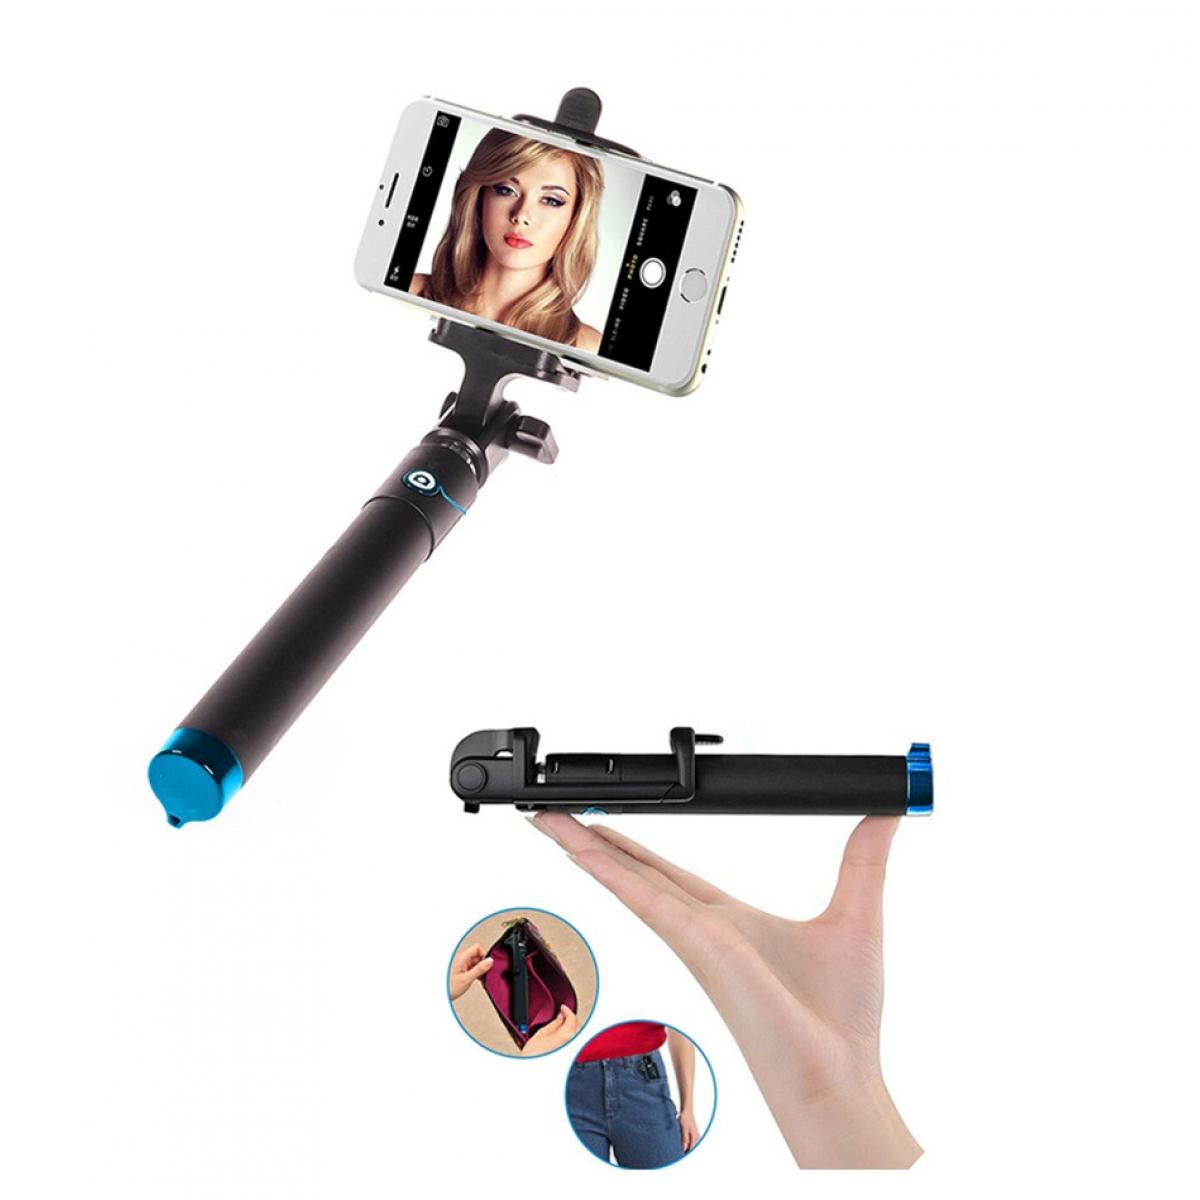 Shot - Perche Selfie Metal pour "WIKO View 5 Plus" Smartphone avec Cable Jack Selfie Stick Android IOS Reglable Bouton Photo (BLEU) - Autres accessoires smartphone